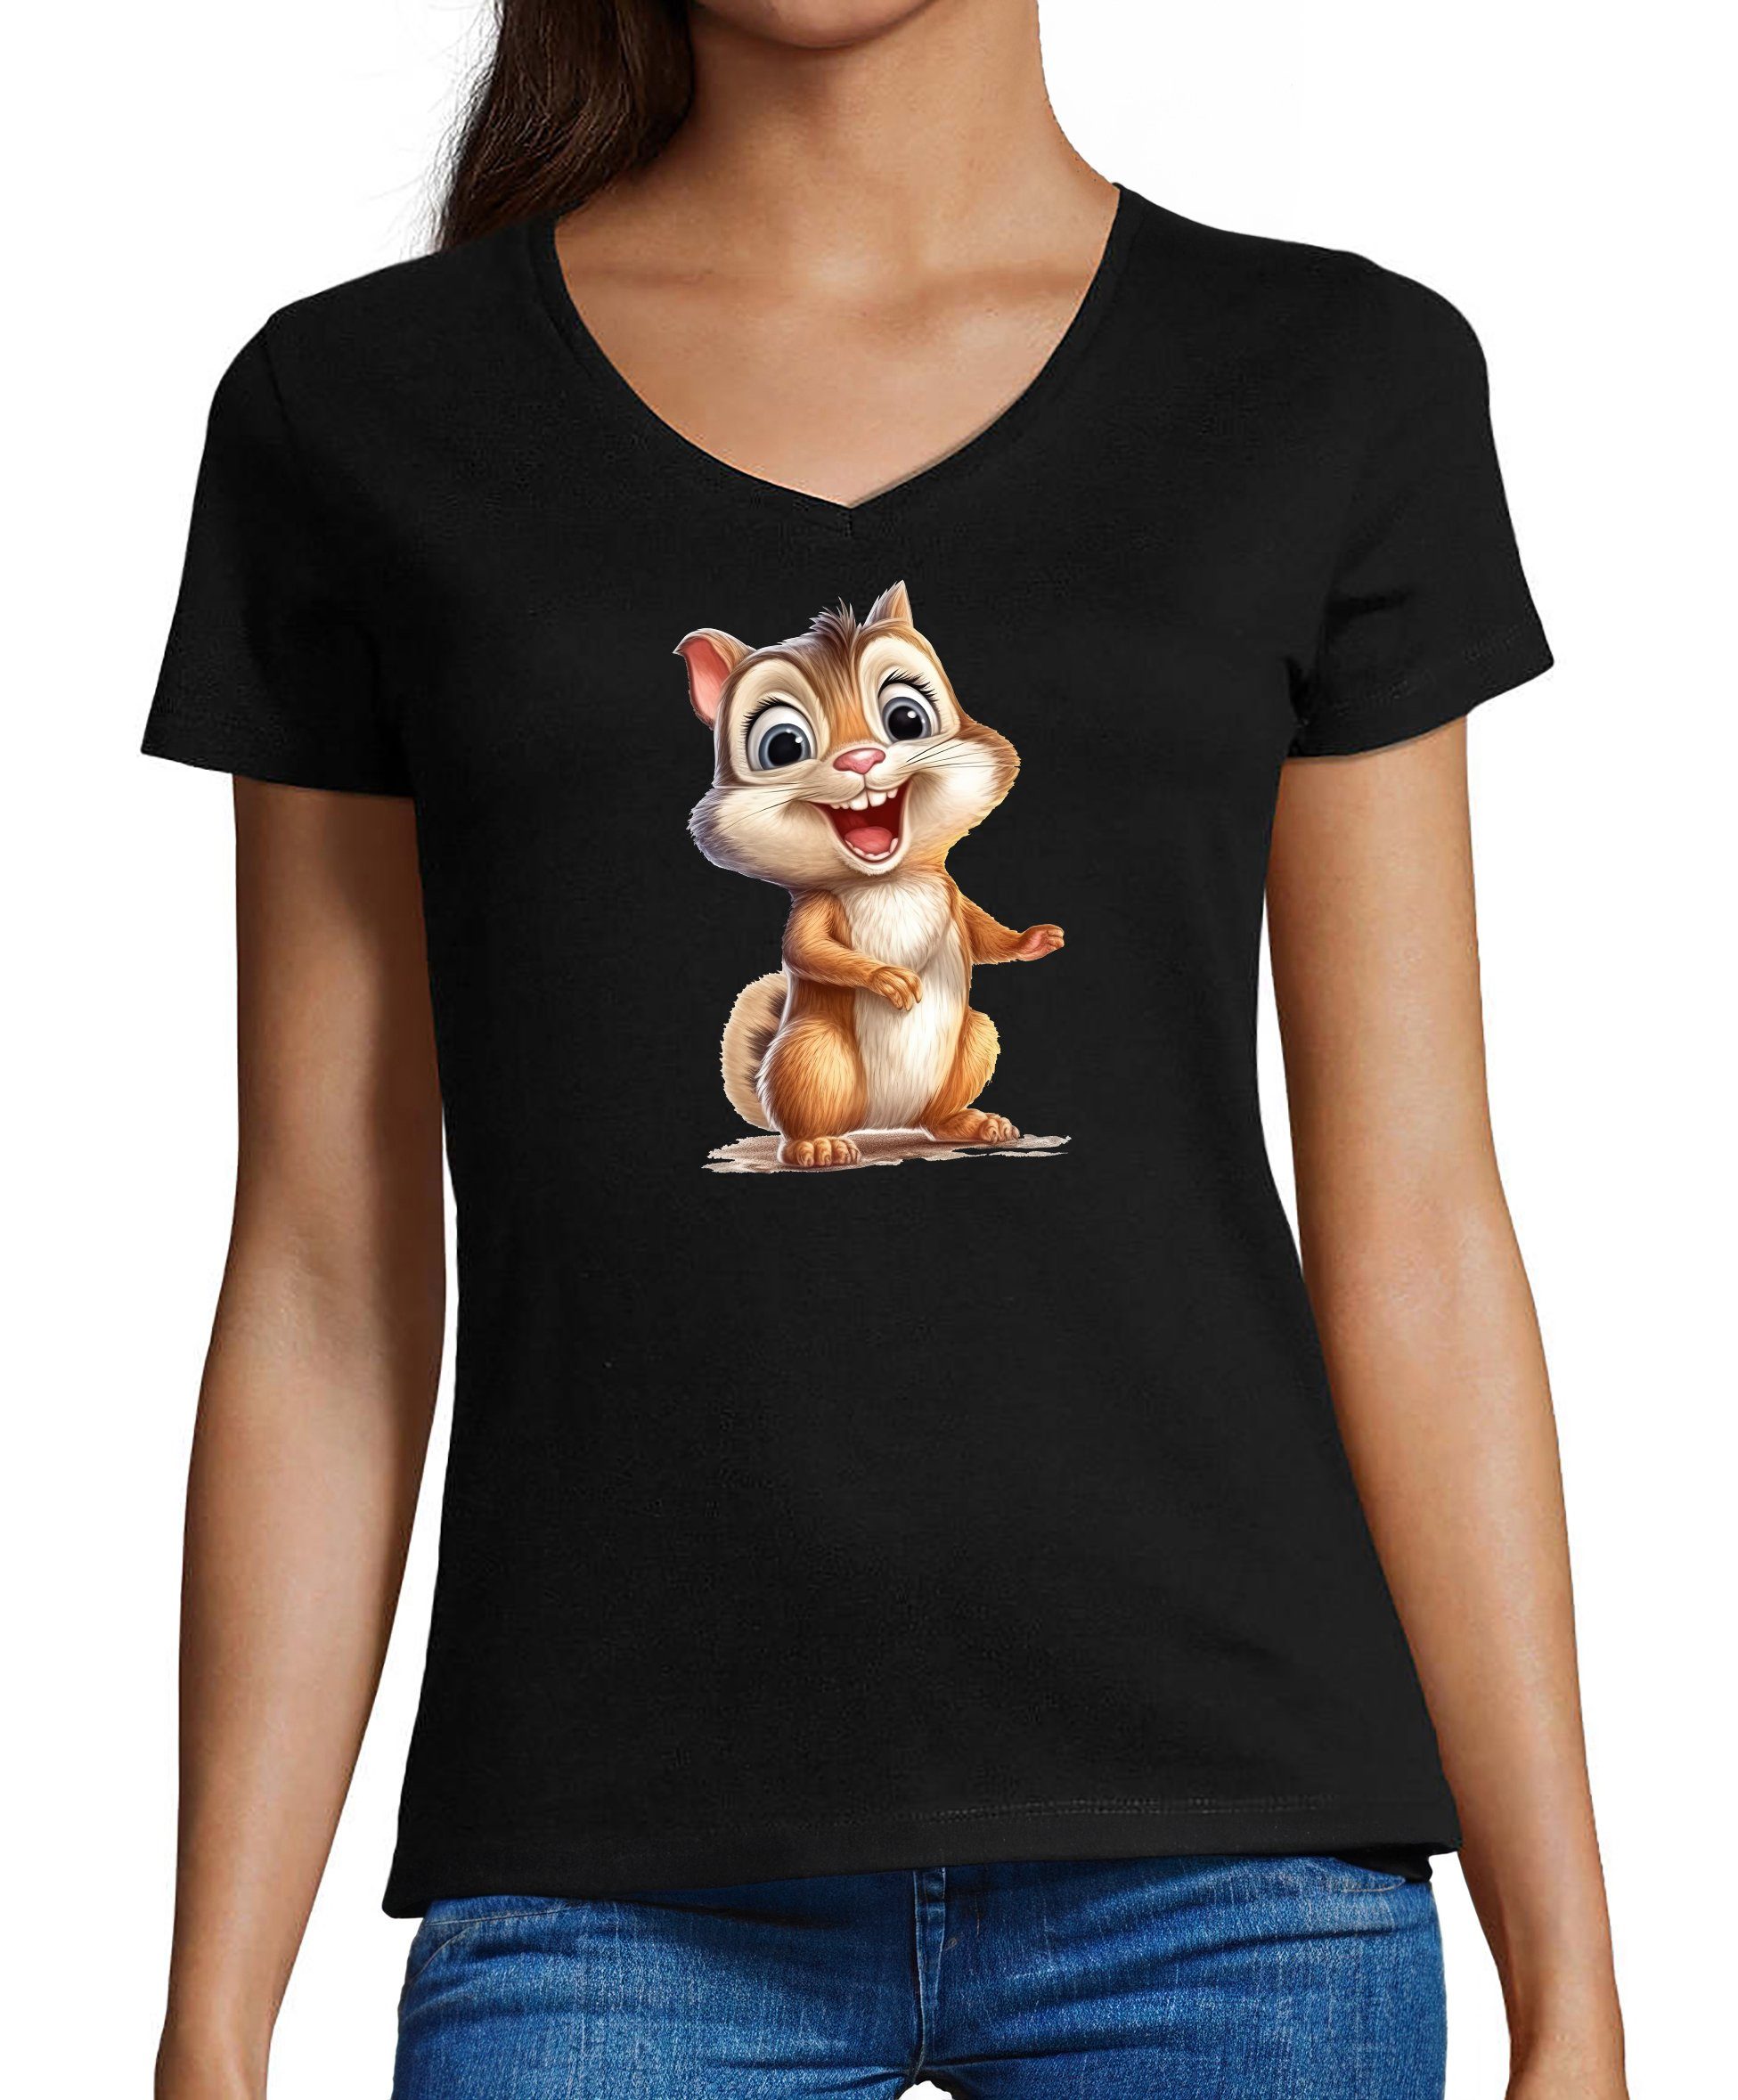 MyDesign24 T-Shirt Damen Wildtier Print Shirt - Baby Eichhörnchen V-Ausschnitt Baumwollshirt mit Aufdruck Slim Fit, i262 schwarz